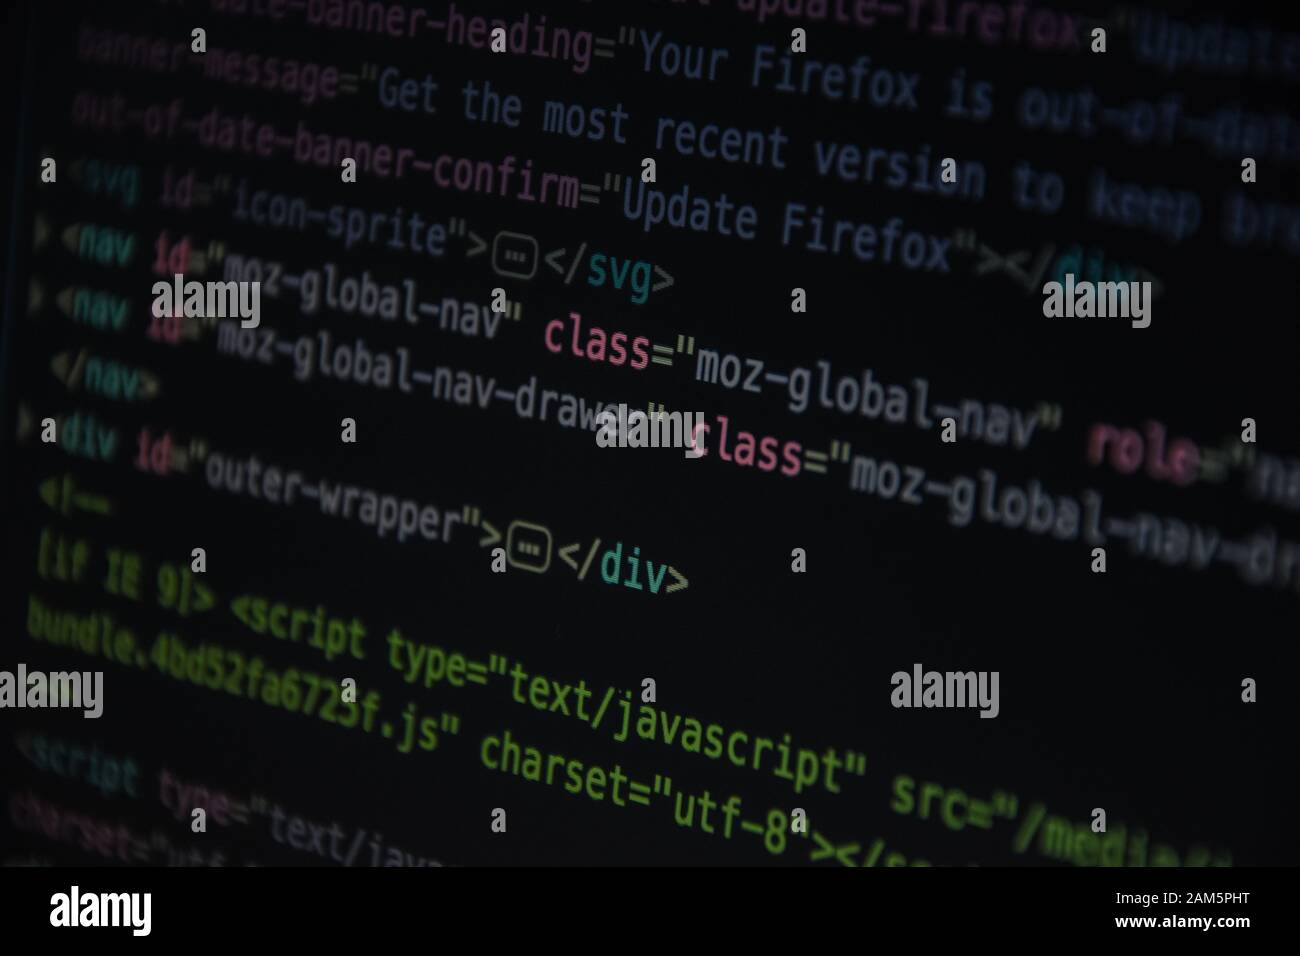 Lấy cảm hứng từ đoạn mã css HTML thu gọn trên màn hình máy tính với nền đen, mang lại cho bạn cảm giác chuyên nghiệp và sành điệu hơn.